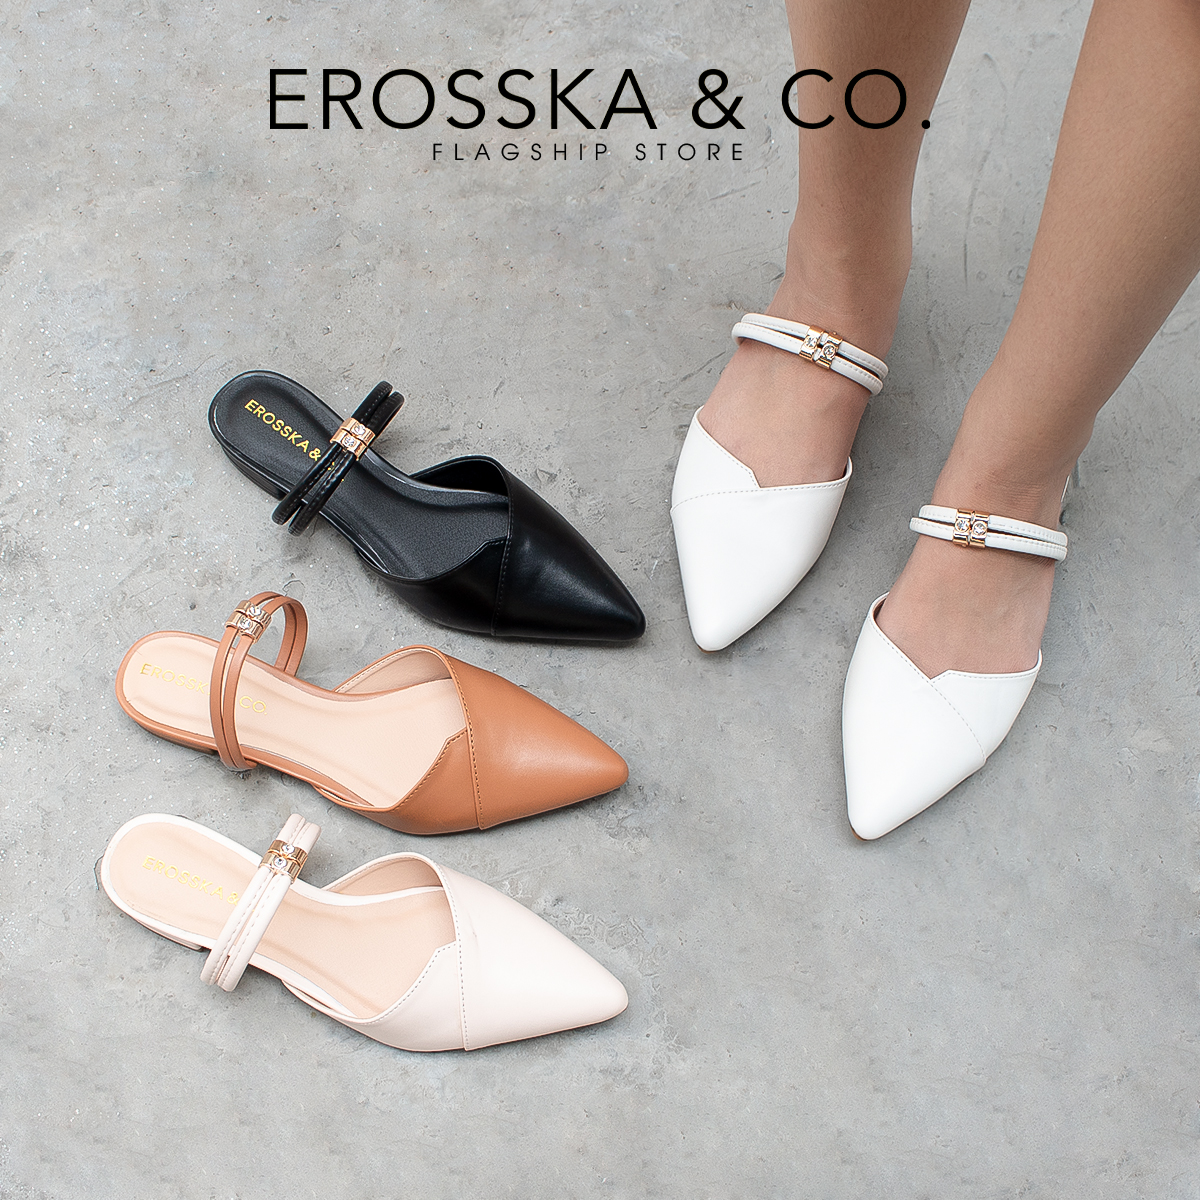 Giày Bít Mũi Phối Dây Thời Trang Erosska EL004 (Màu trắng)